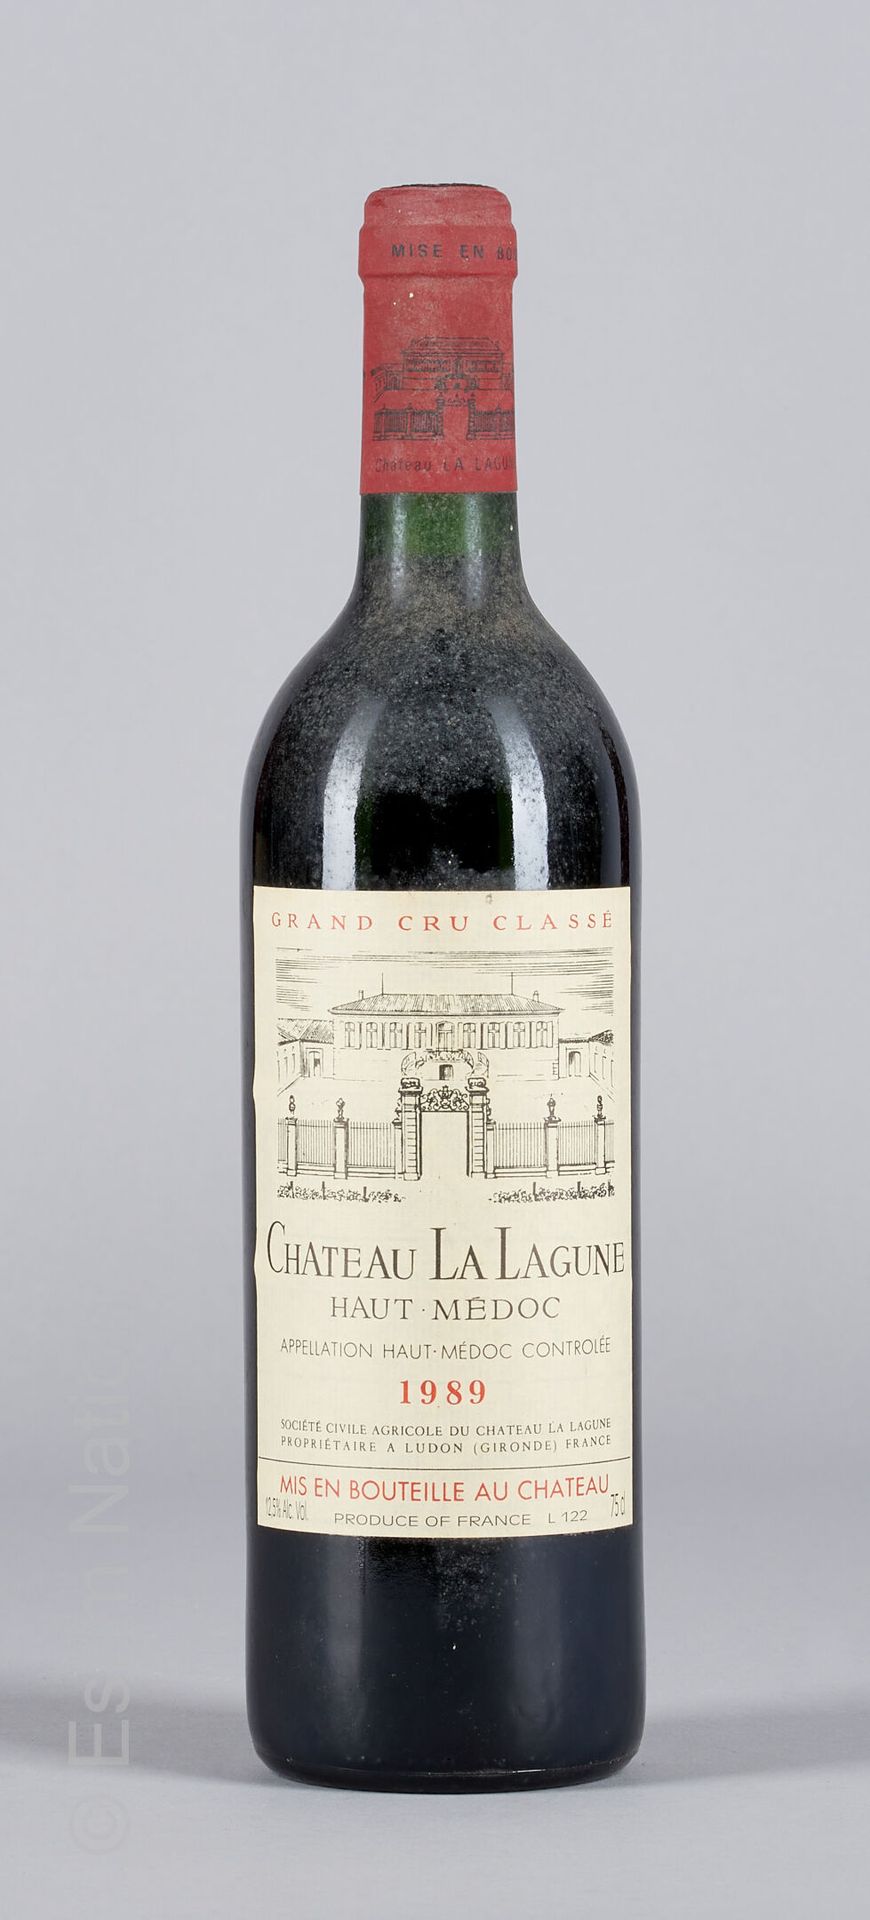 BORDEAUX 1 bottiglia Château La Lagune 1986 3a CG Haut-Médoc

(E. F, tlm)